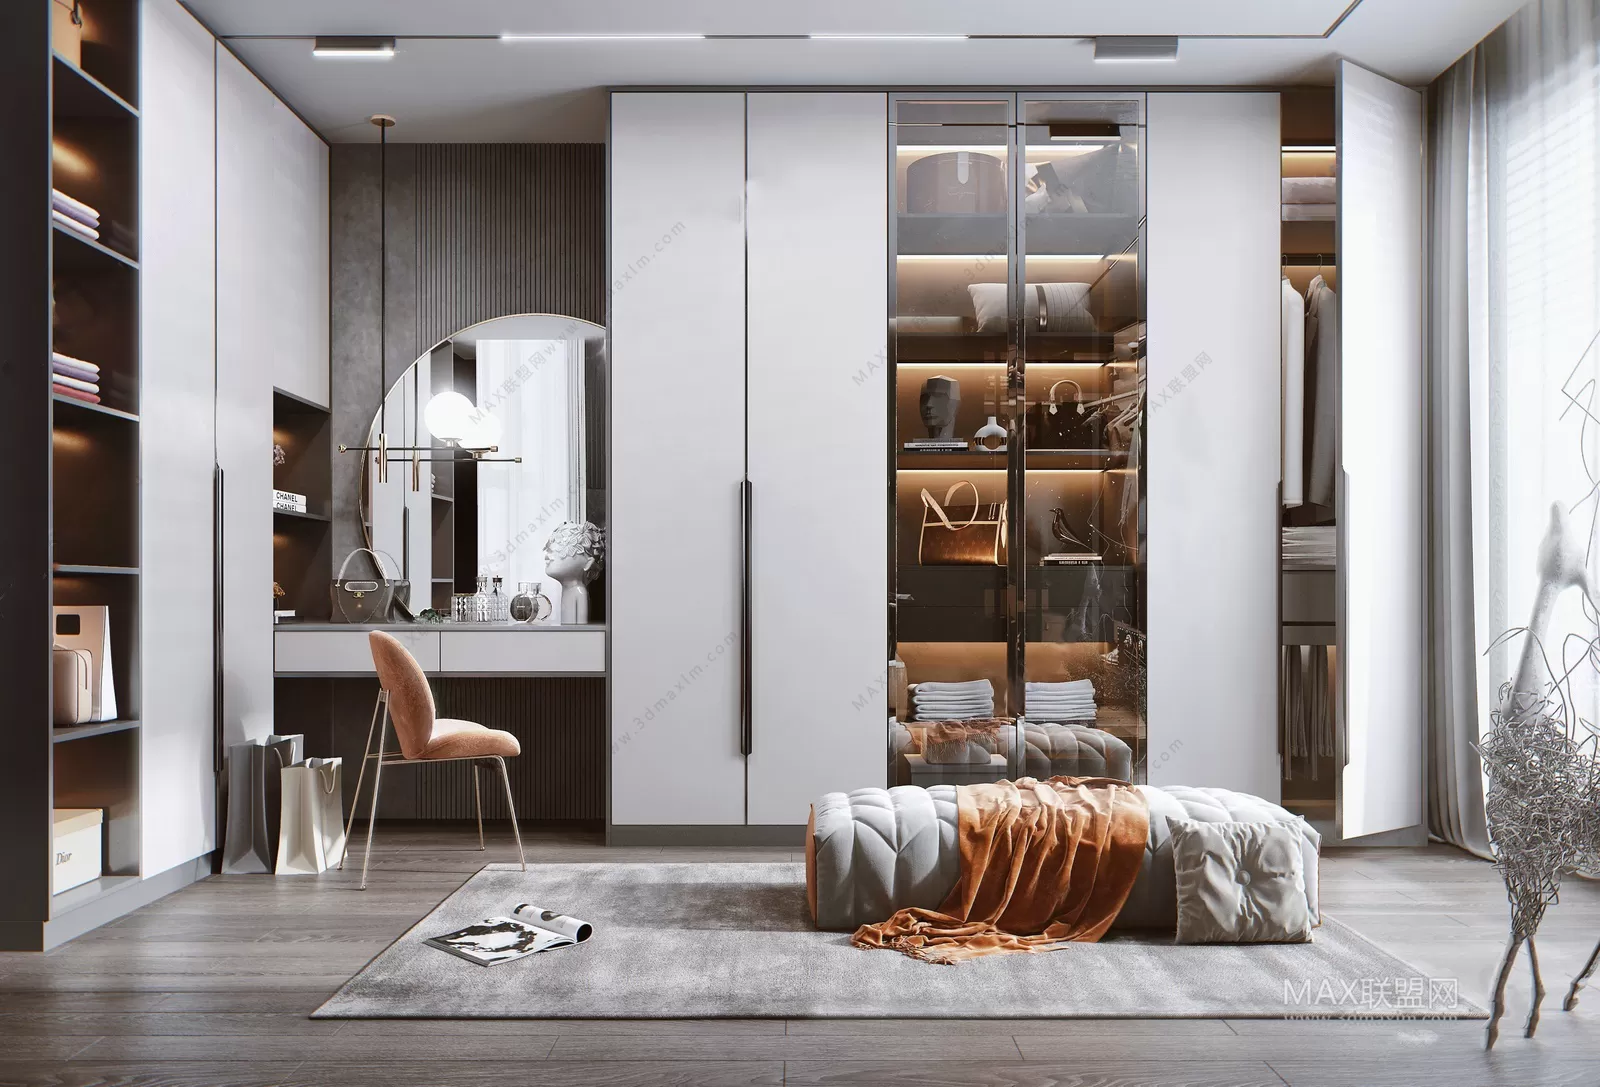 Cloakroom – Interior Design – Modern Design – 001